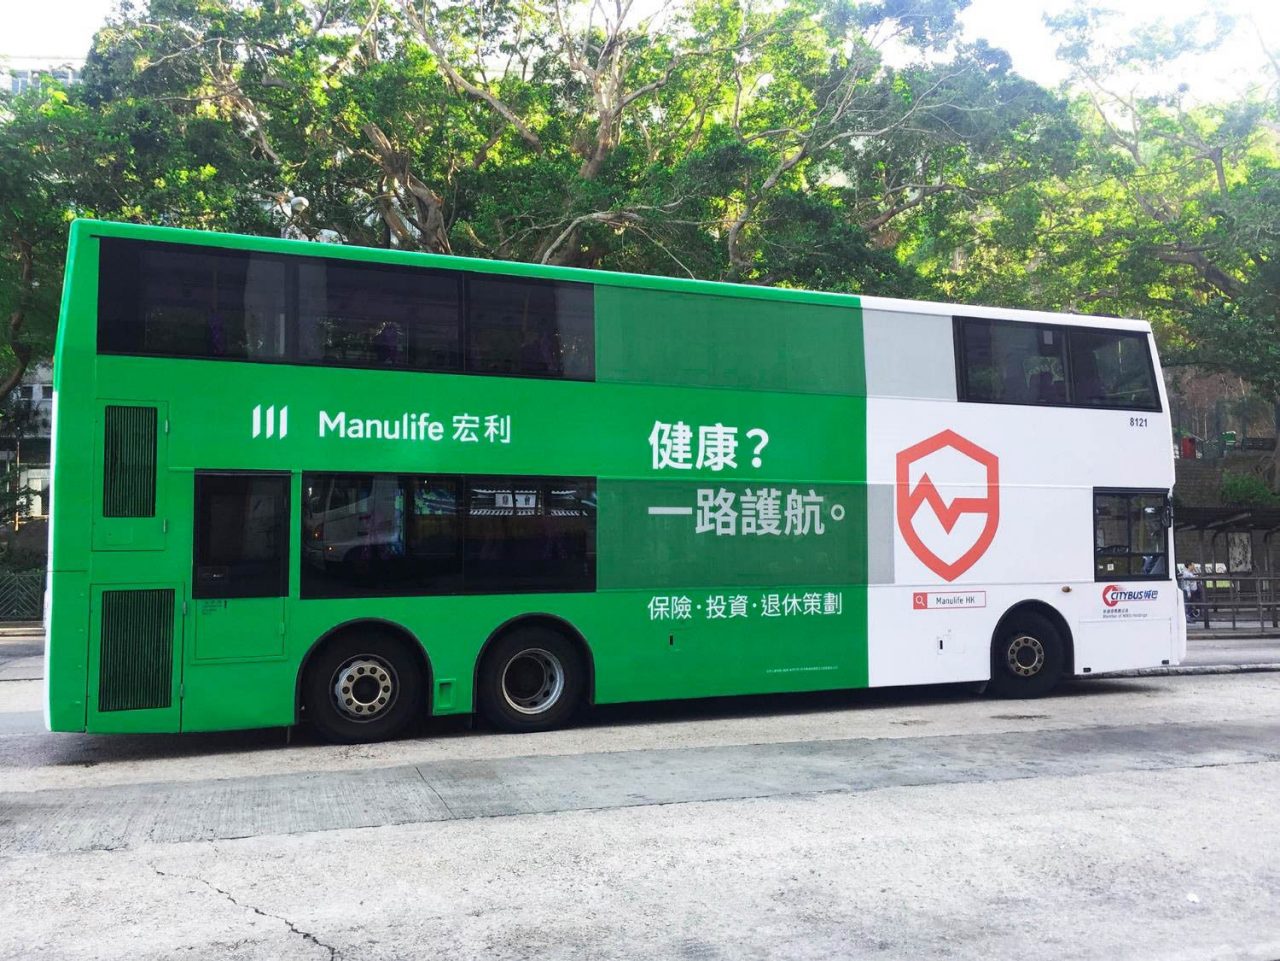 Manulife branded bus in Hong Kong